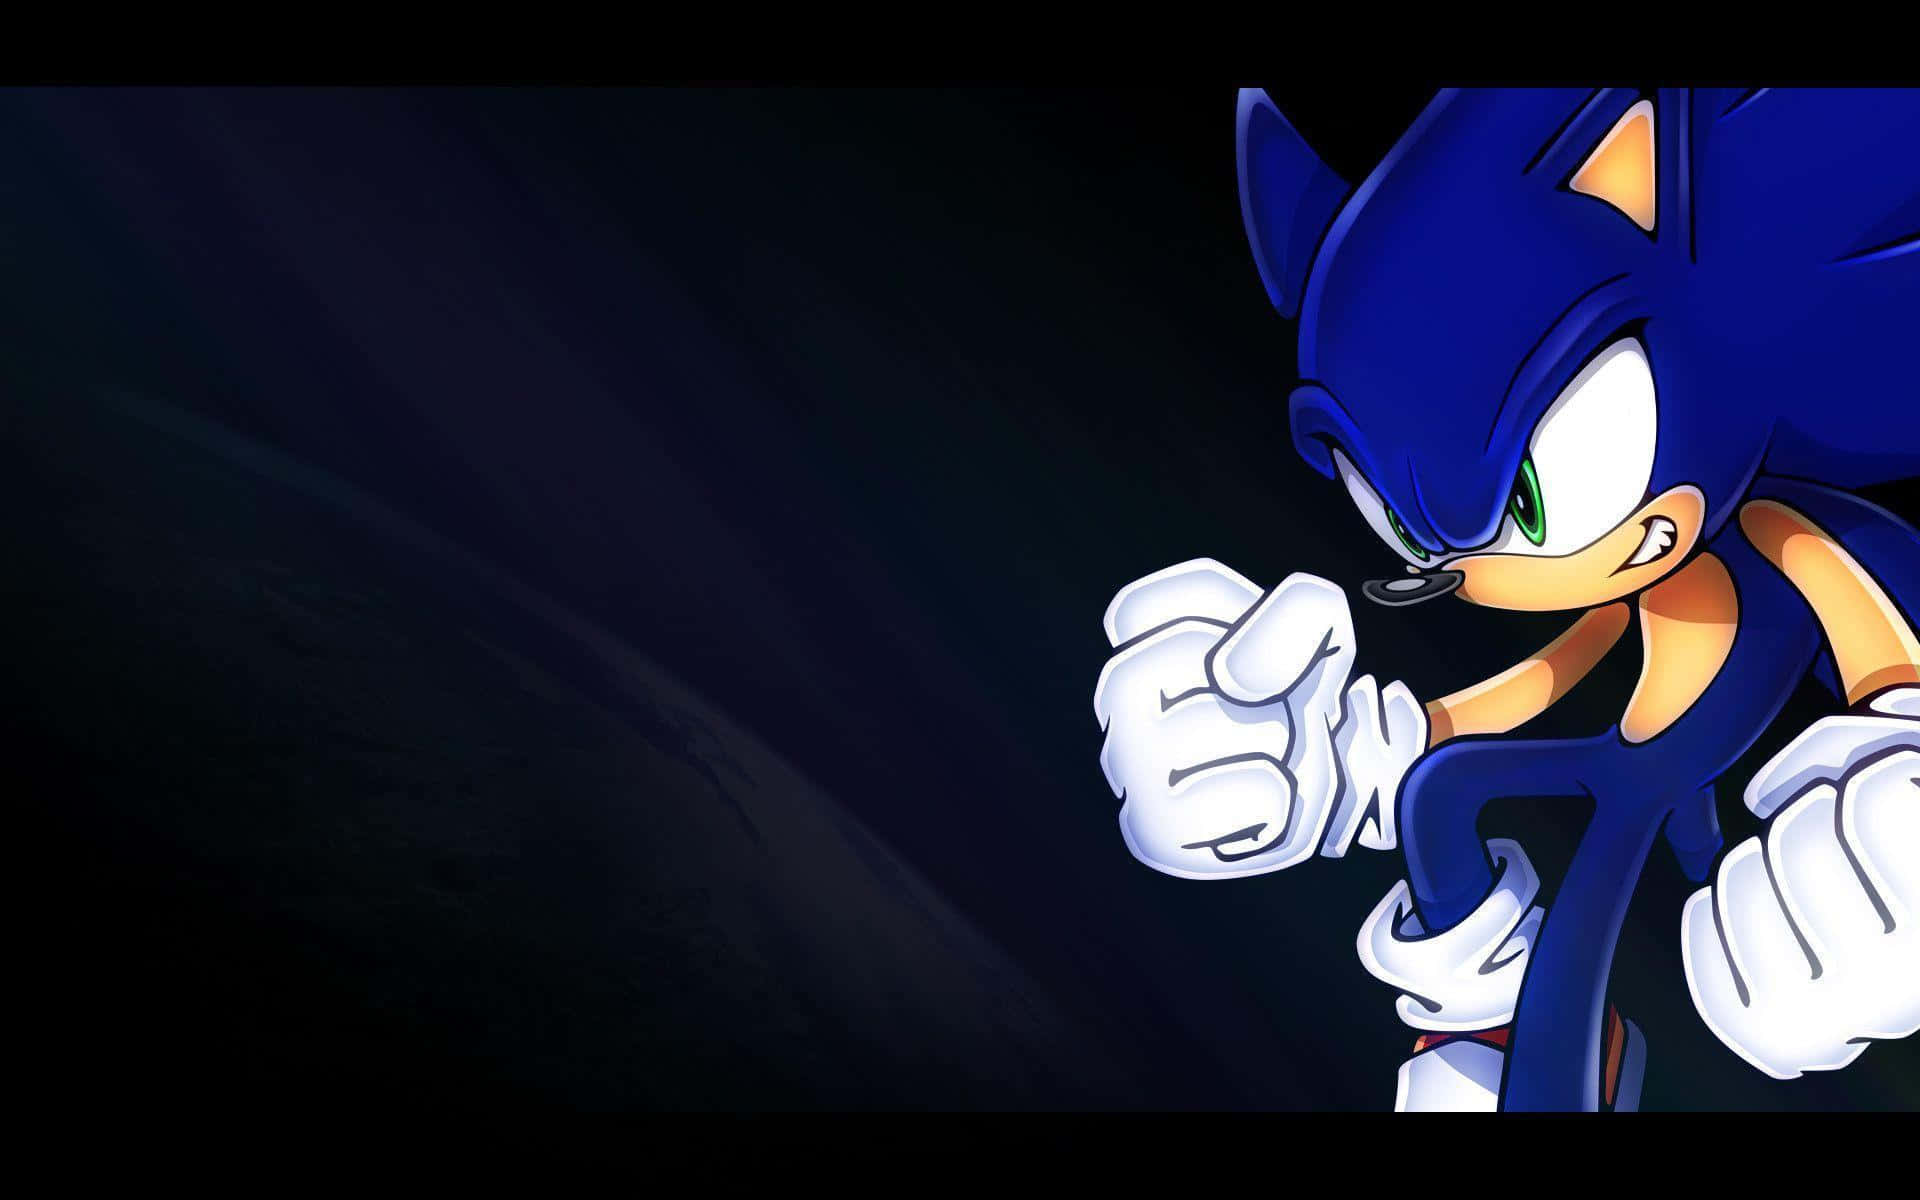 Sonicthe Hedgehog Susar Genom De Levande Färgerna I En Pixlad Landskap.